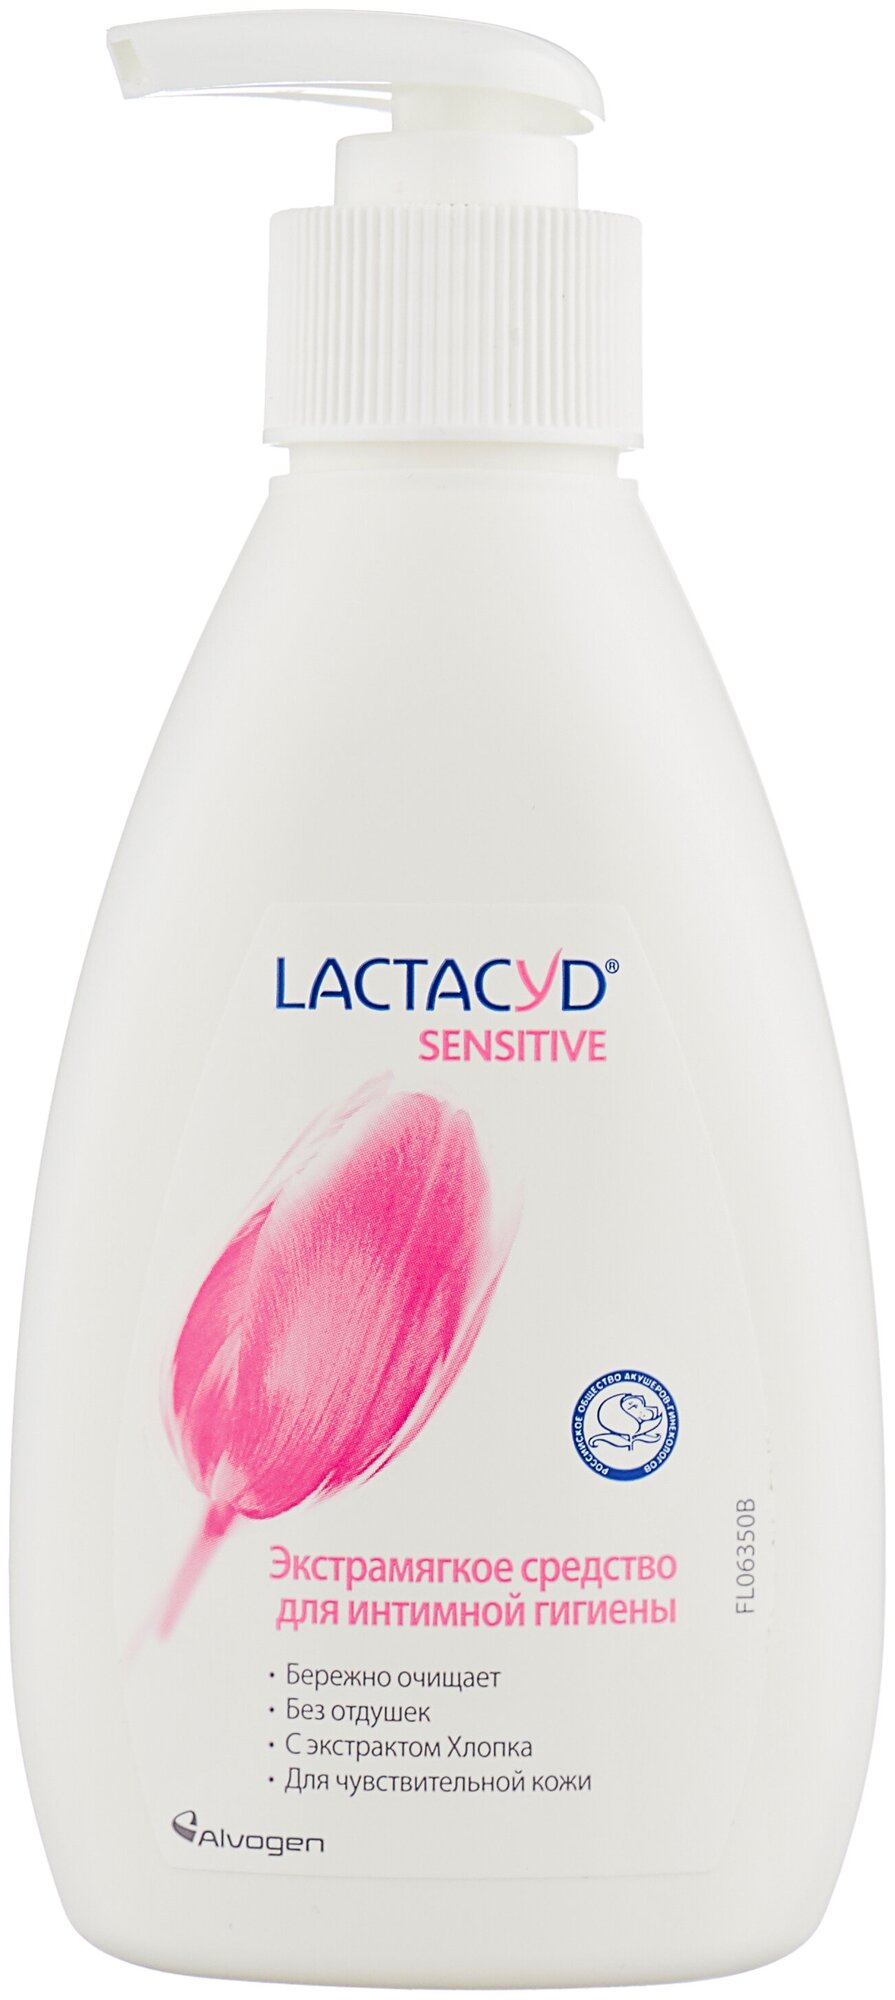 Lactacyd для чувствительной кожи, средство для интимной гигиены флакон 200 мл